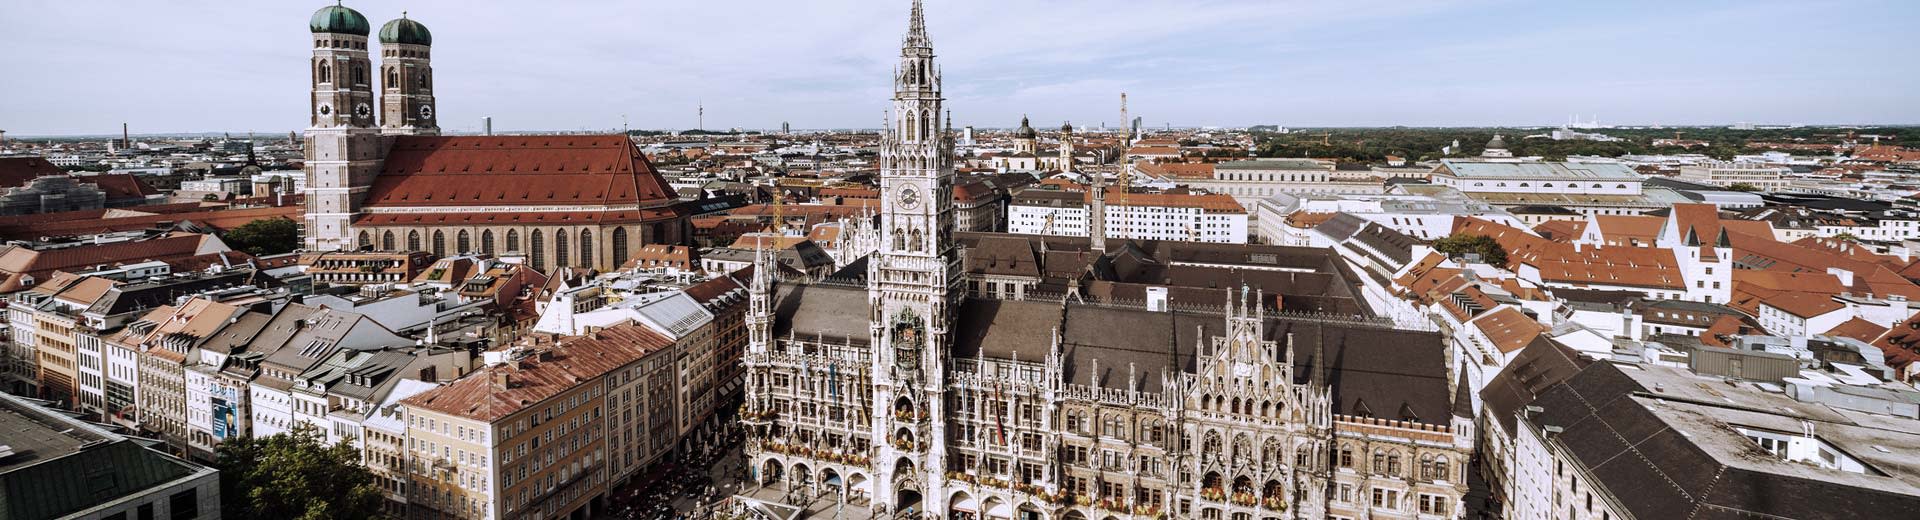 Une belle place de la ville à Munich par une journée claire, avec des clochers de l'église dominant l'horizon.